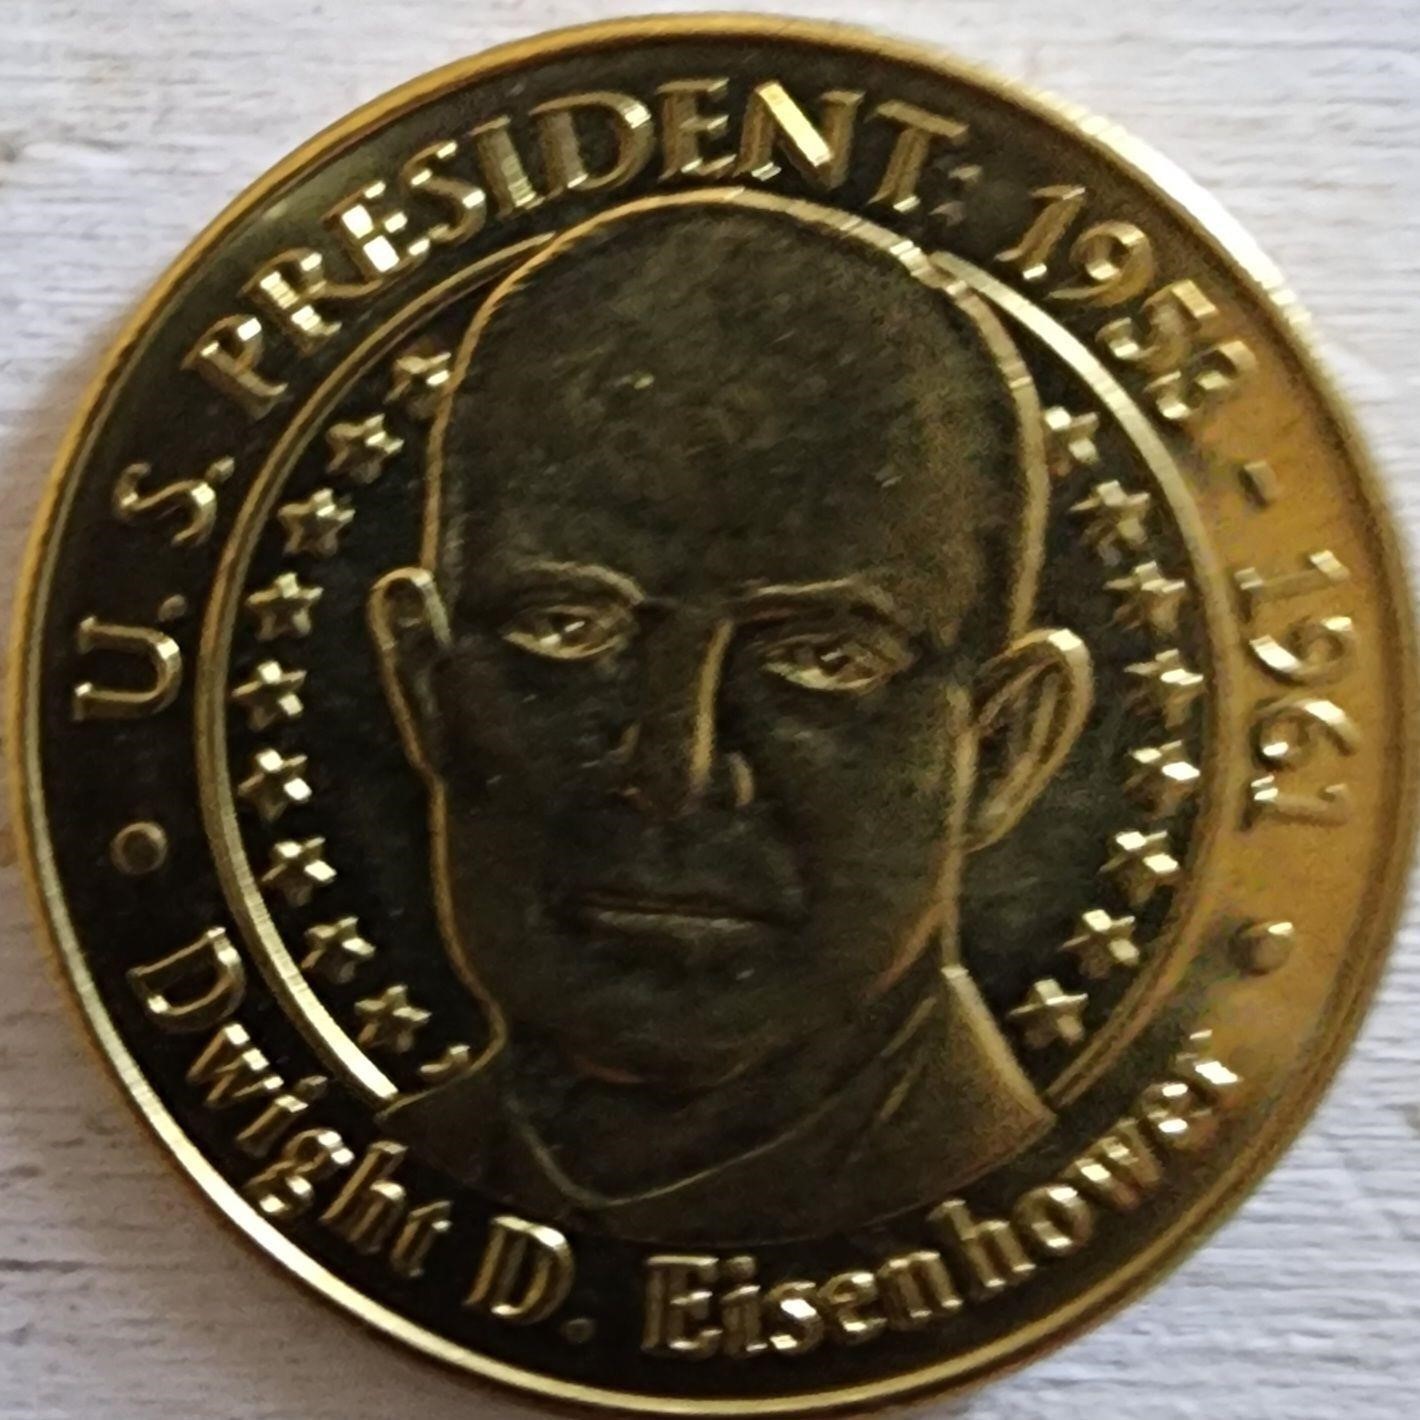 Bag full of Eisenhower Sunoco Coins